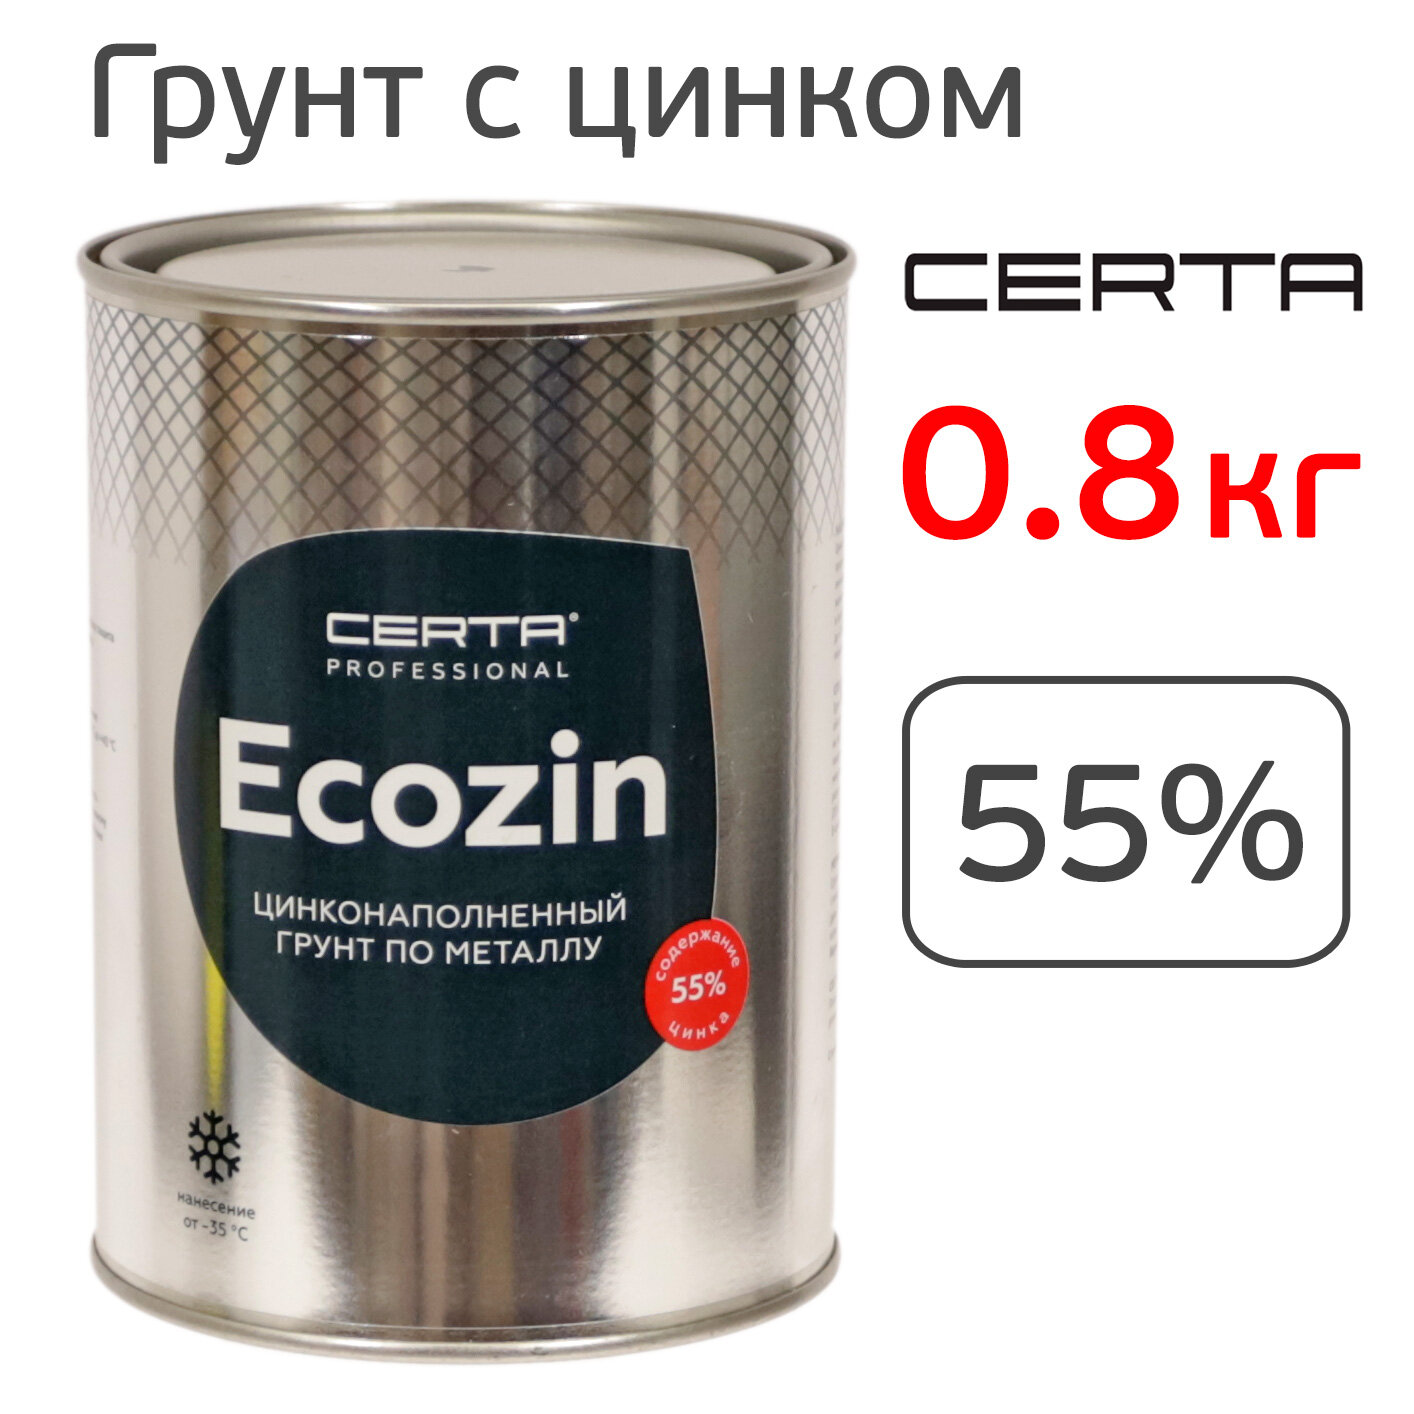 Грунт цинконаполненный Certa ECOZIN 55% (0.8кг) серый цинковый антикоррозионный состав